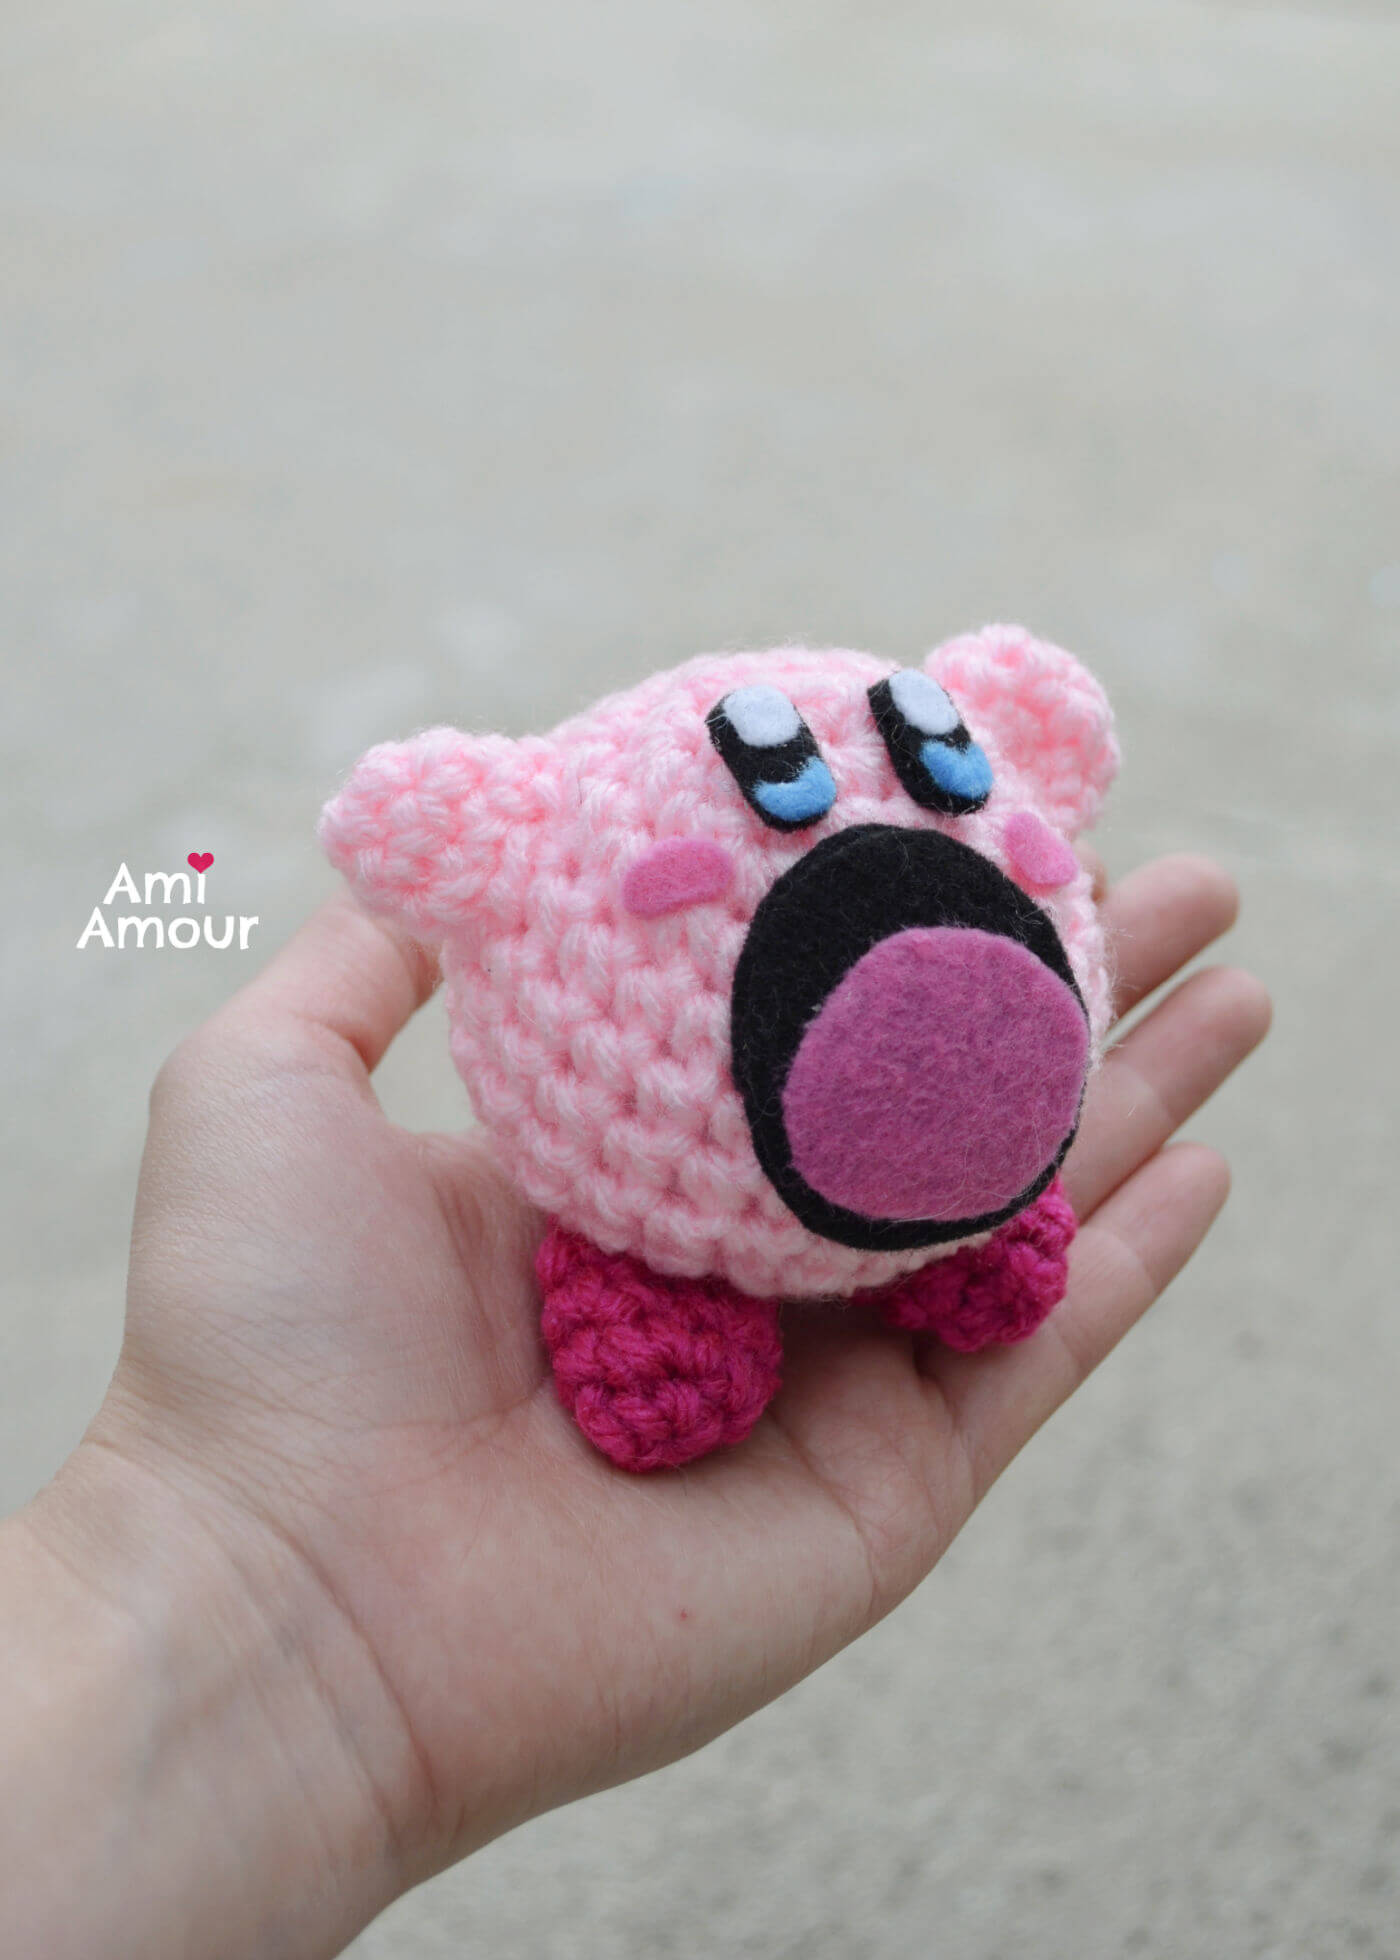 Kirby Swallow Crochet Version